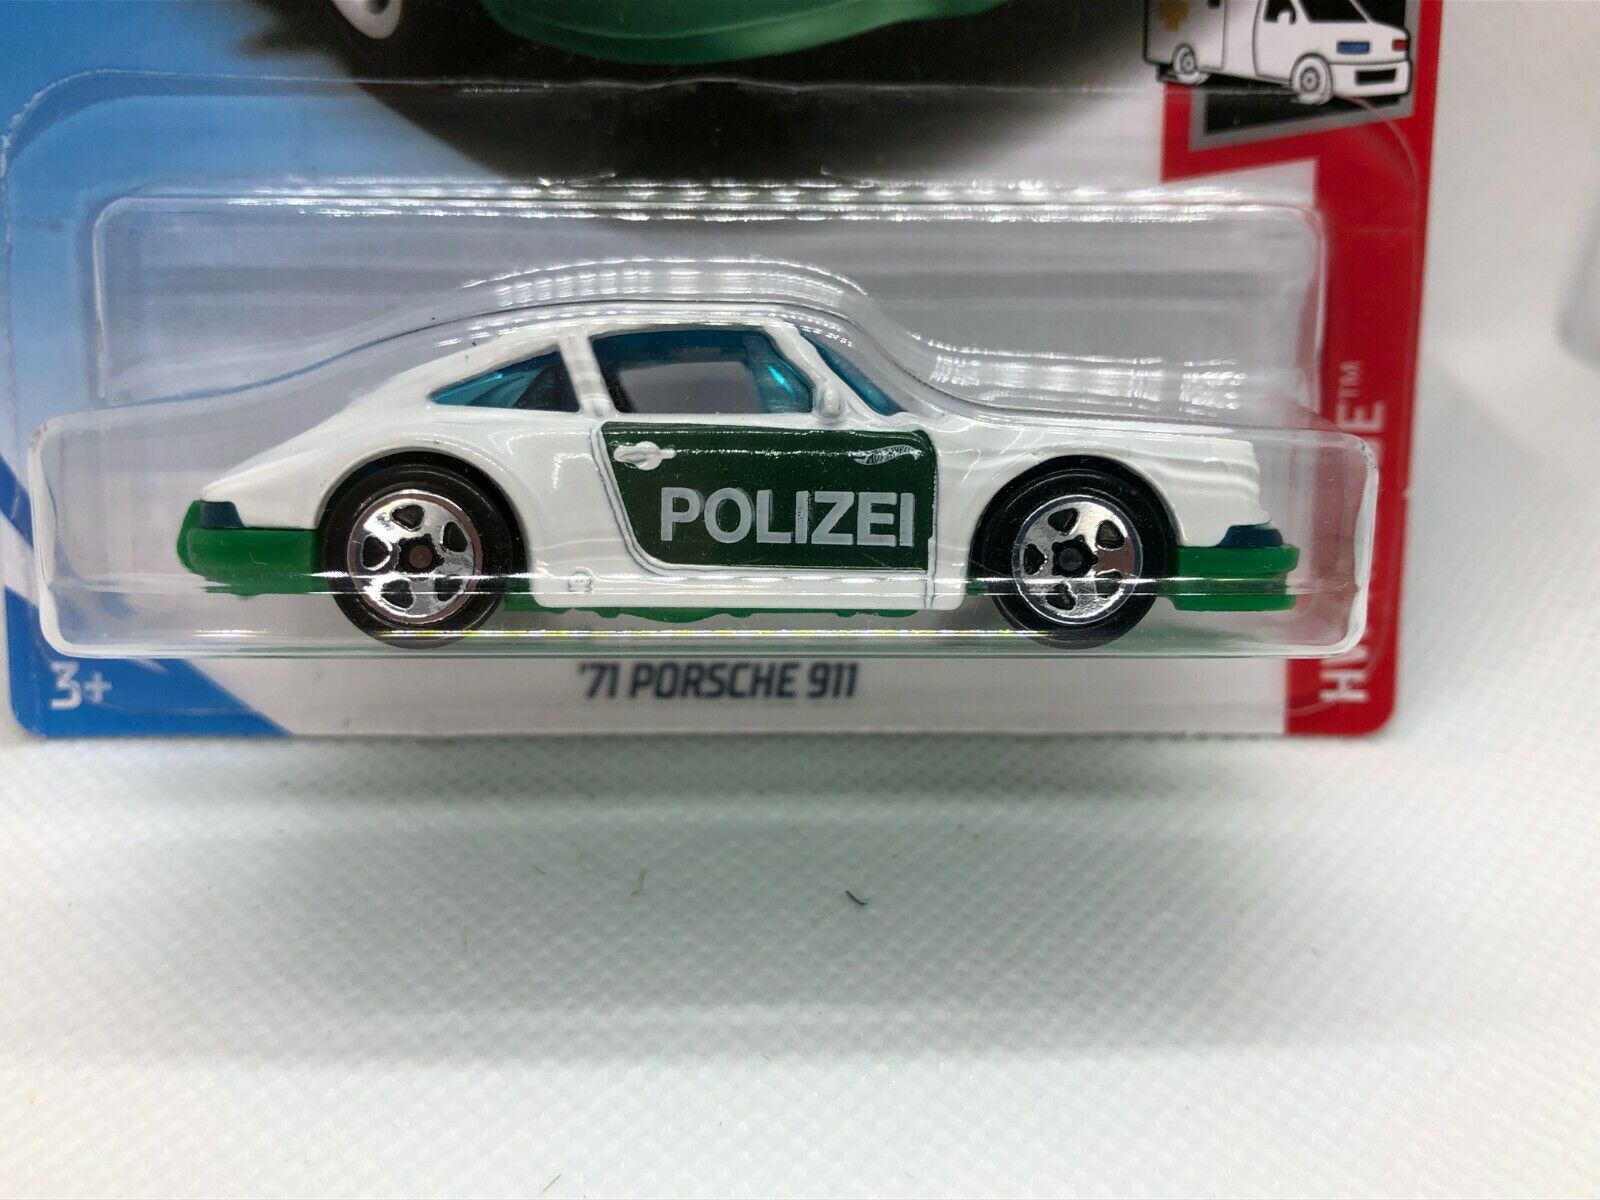 71 Porsche 911